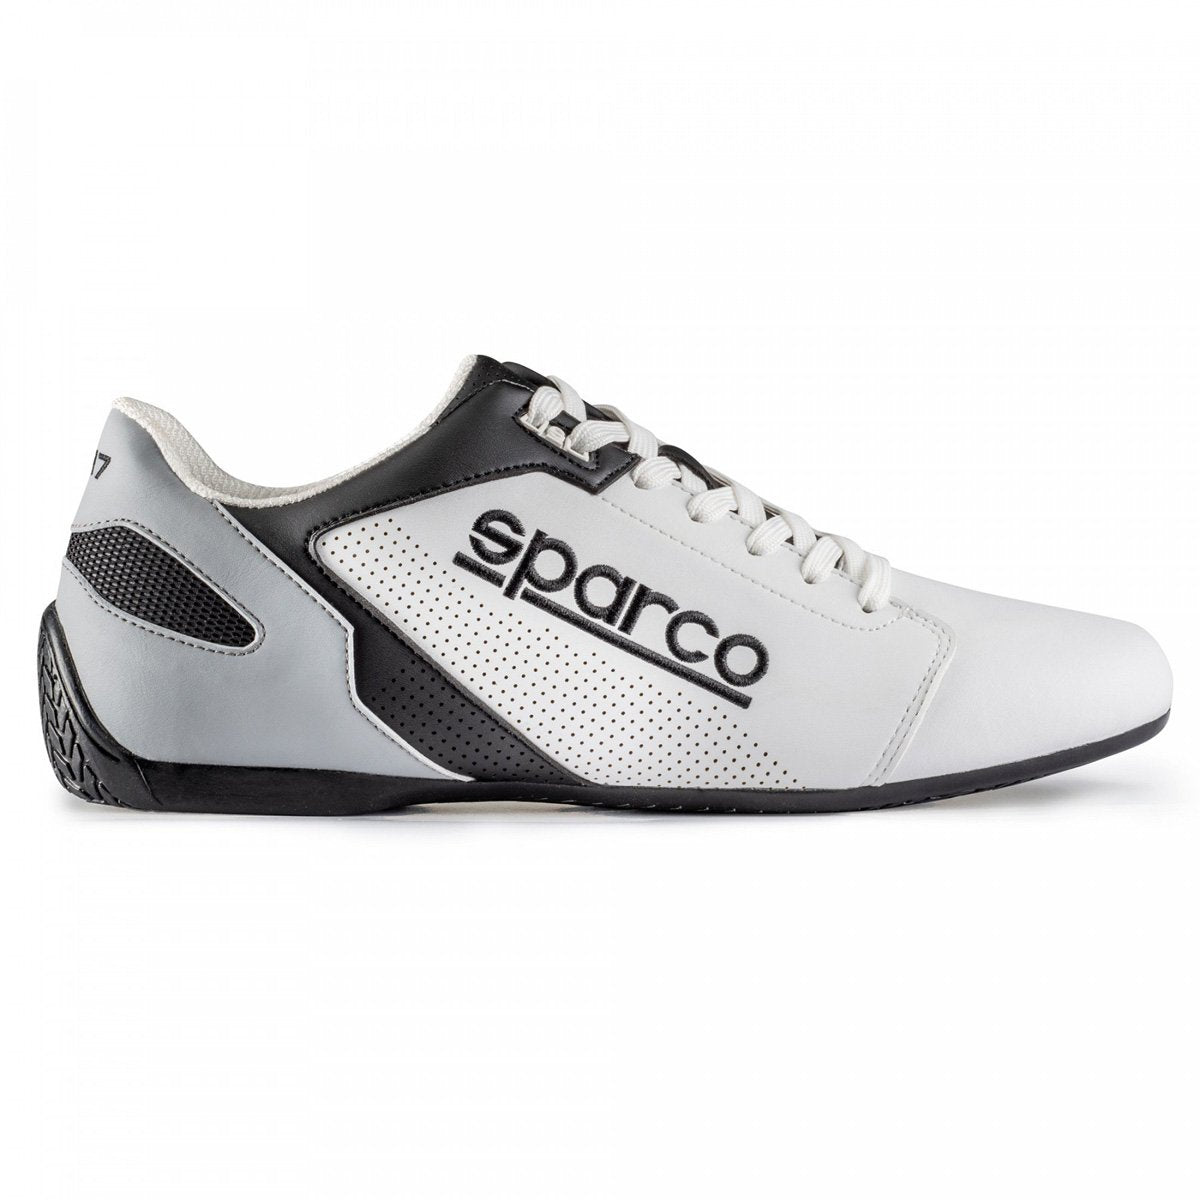 Sparco SL-17 Shoes